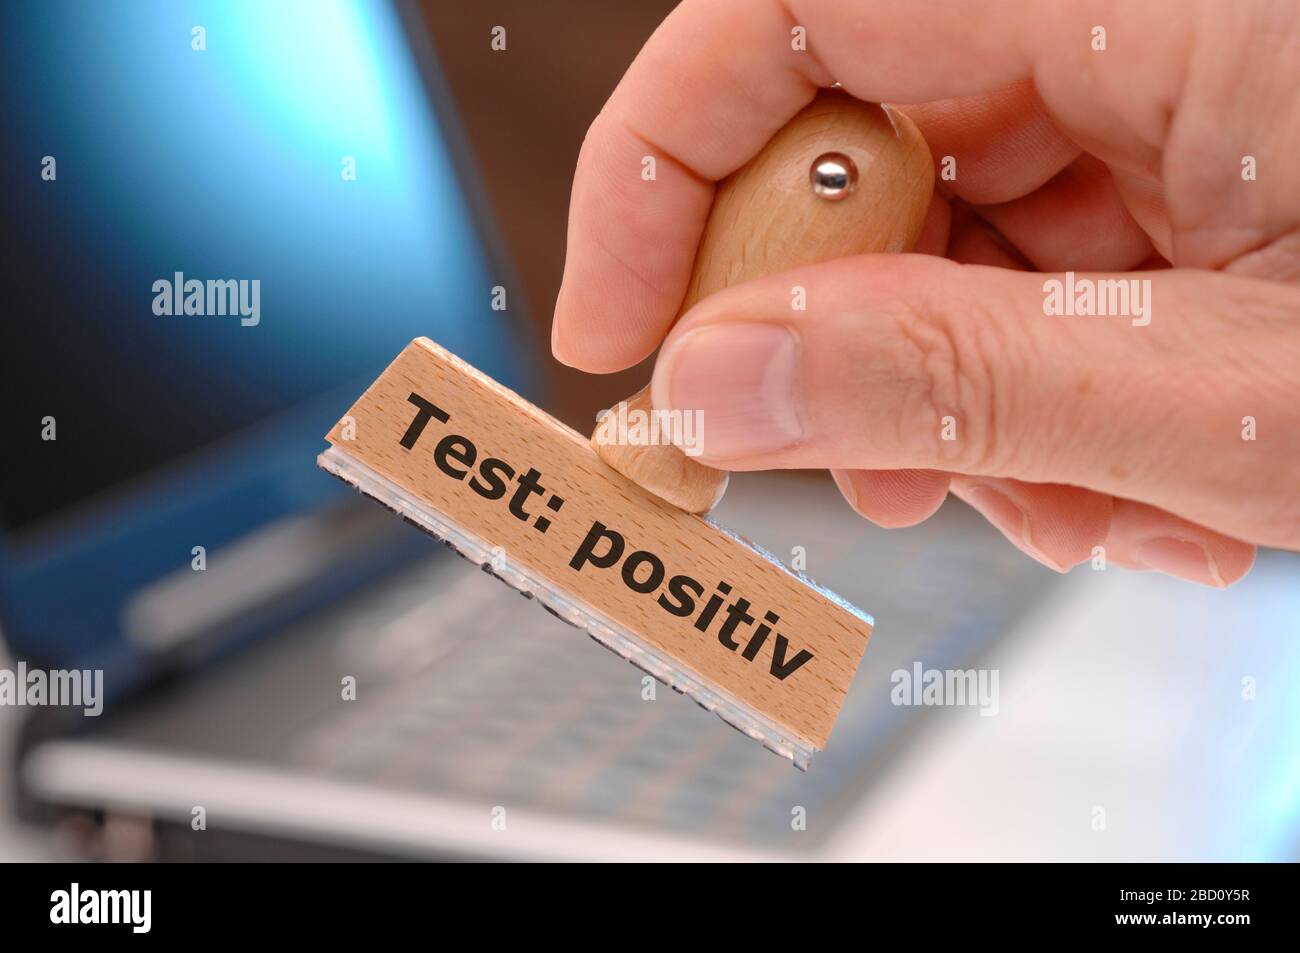 Testergebnis positiv gedruckt auf Holzstempel Foto Stock